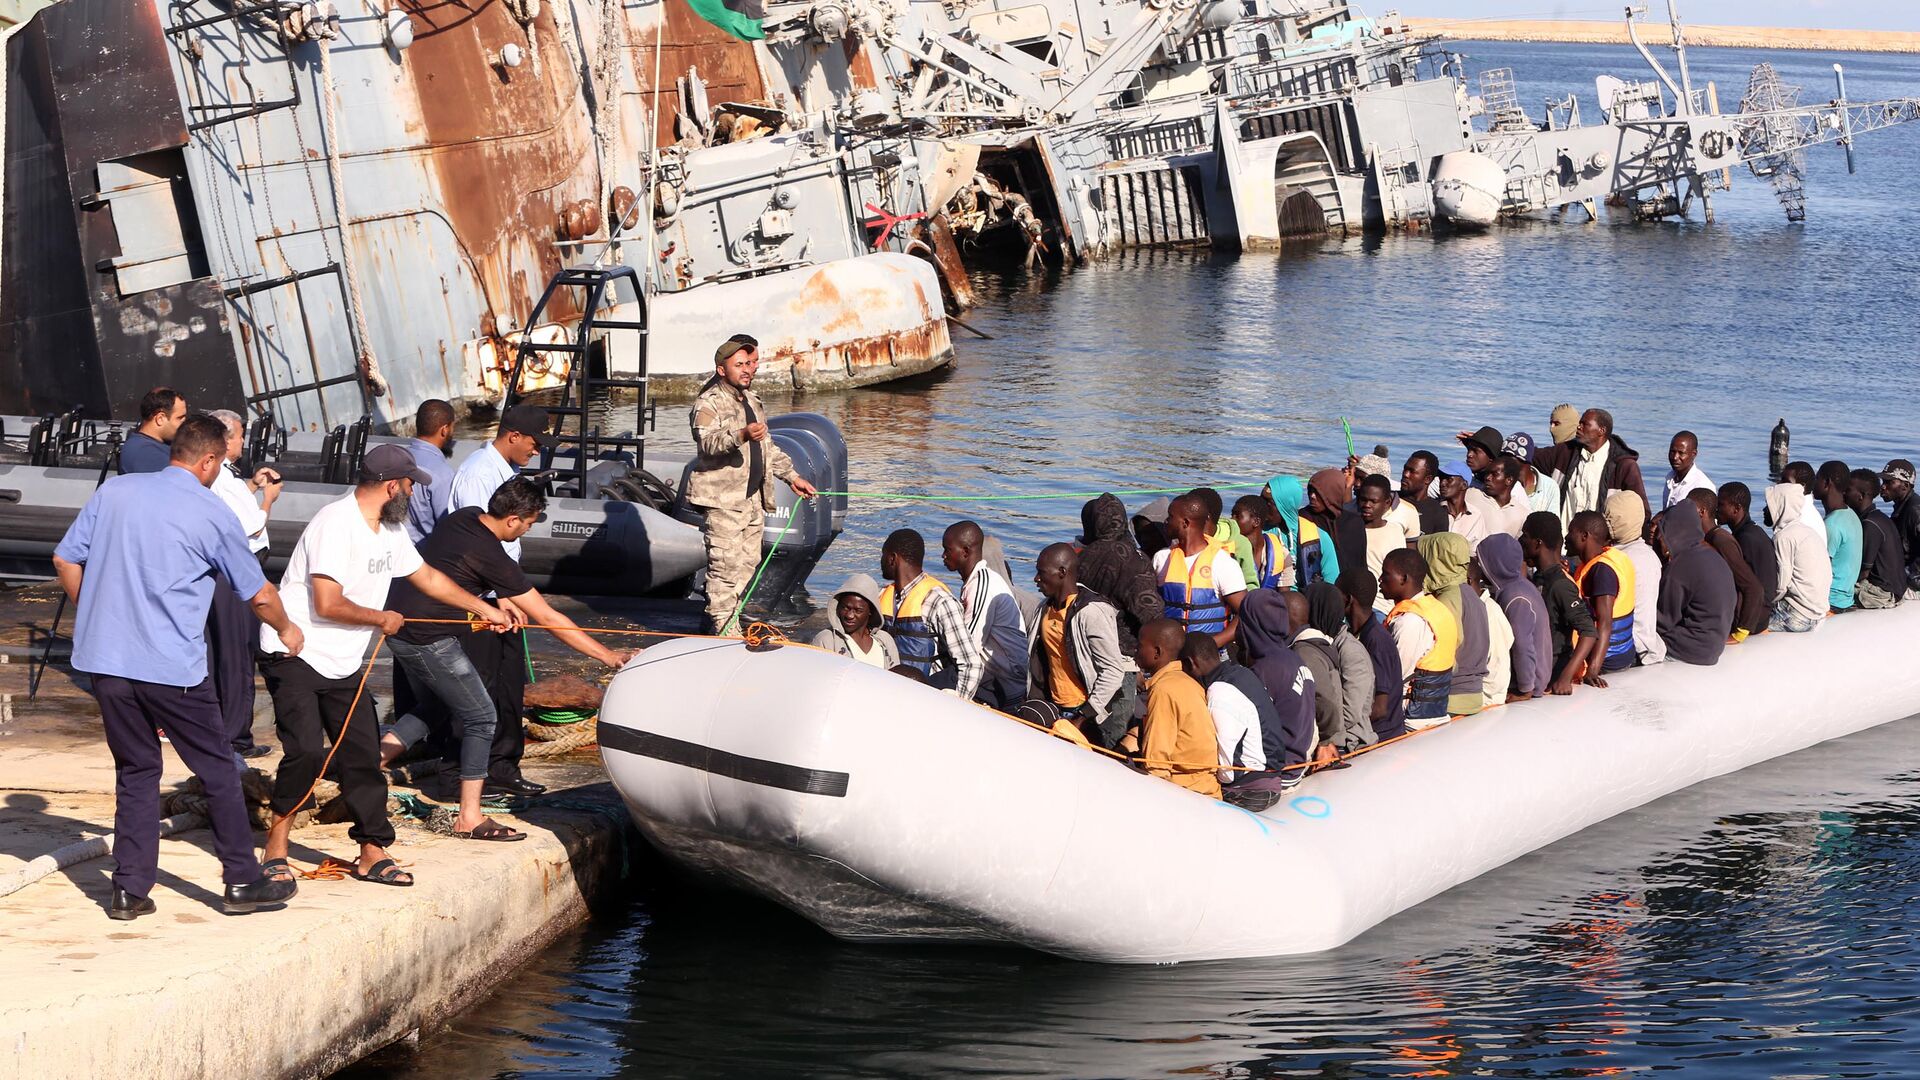  خفر السواحل الليبي يقوم بسحب قارب يحمل مهاجرين أفارقة، تم إنقاذهم أثناء محاولتهم الوصول إلى أوروبا بطريقة غير شرعية، في قاعدة بحرية بالقرب من العاصمة طرابلس في 29 سبتمبر/ أيلول 2015. - سبوتنيك عربي, 1920, 11.10.2021